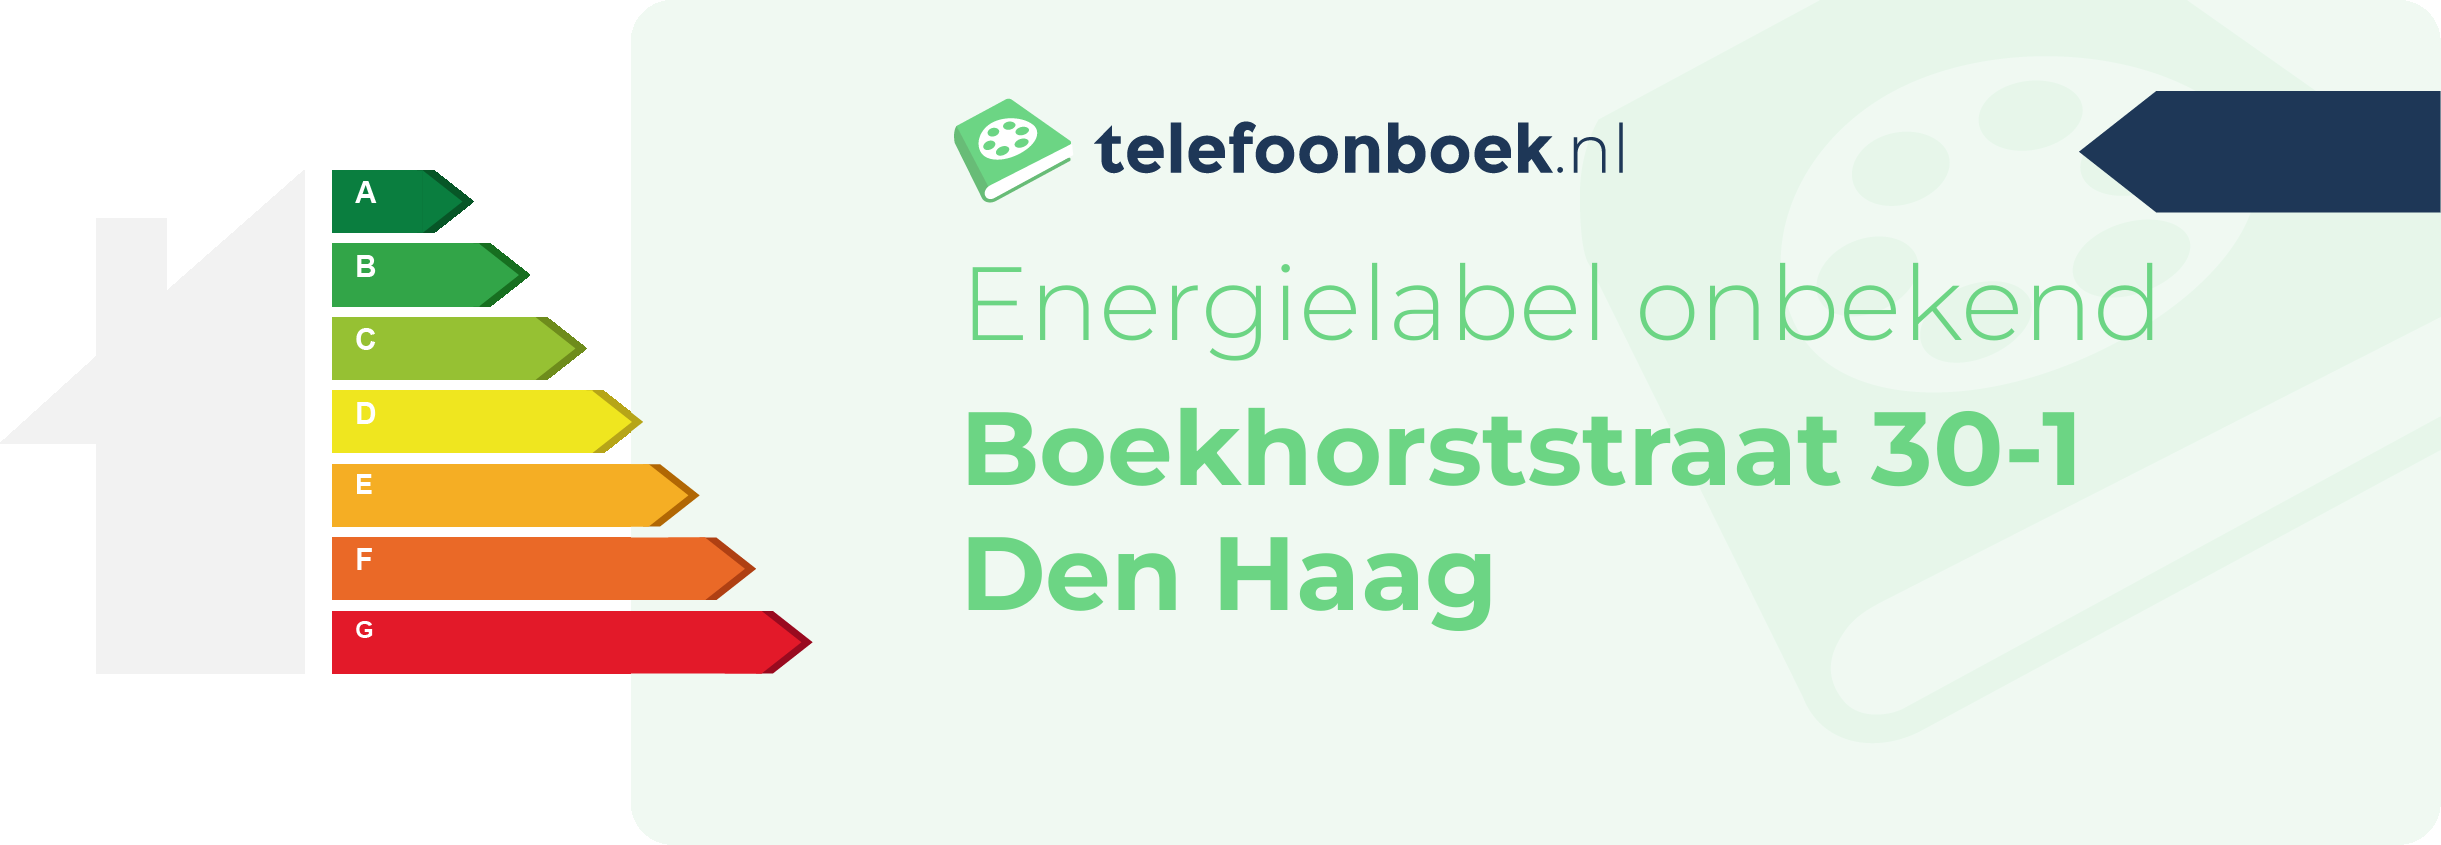 Energielabel Boekhorststraat 30-1 Den Haag